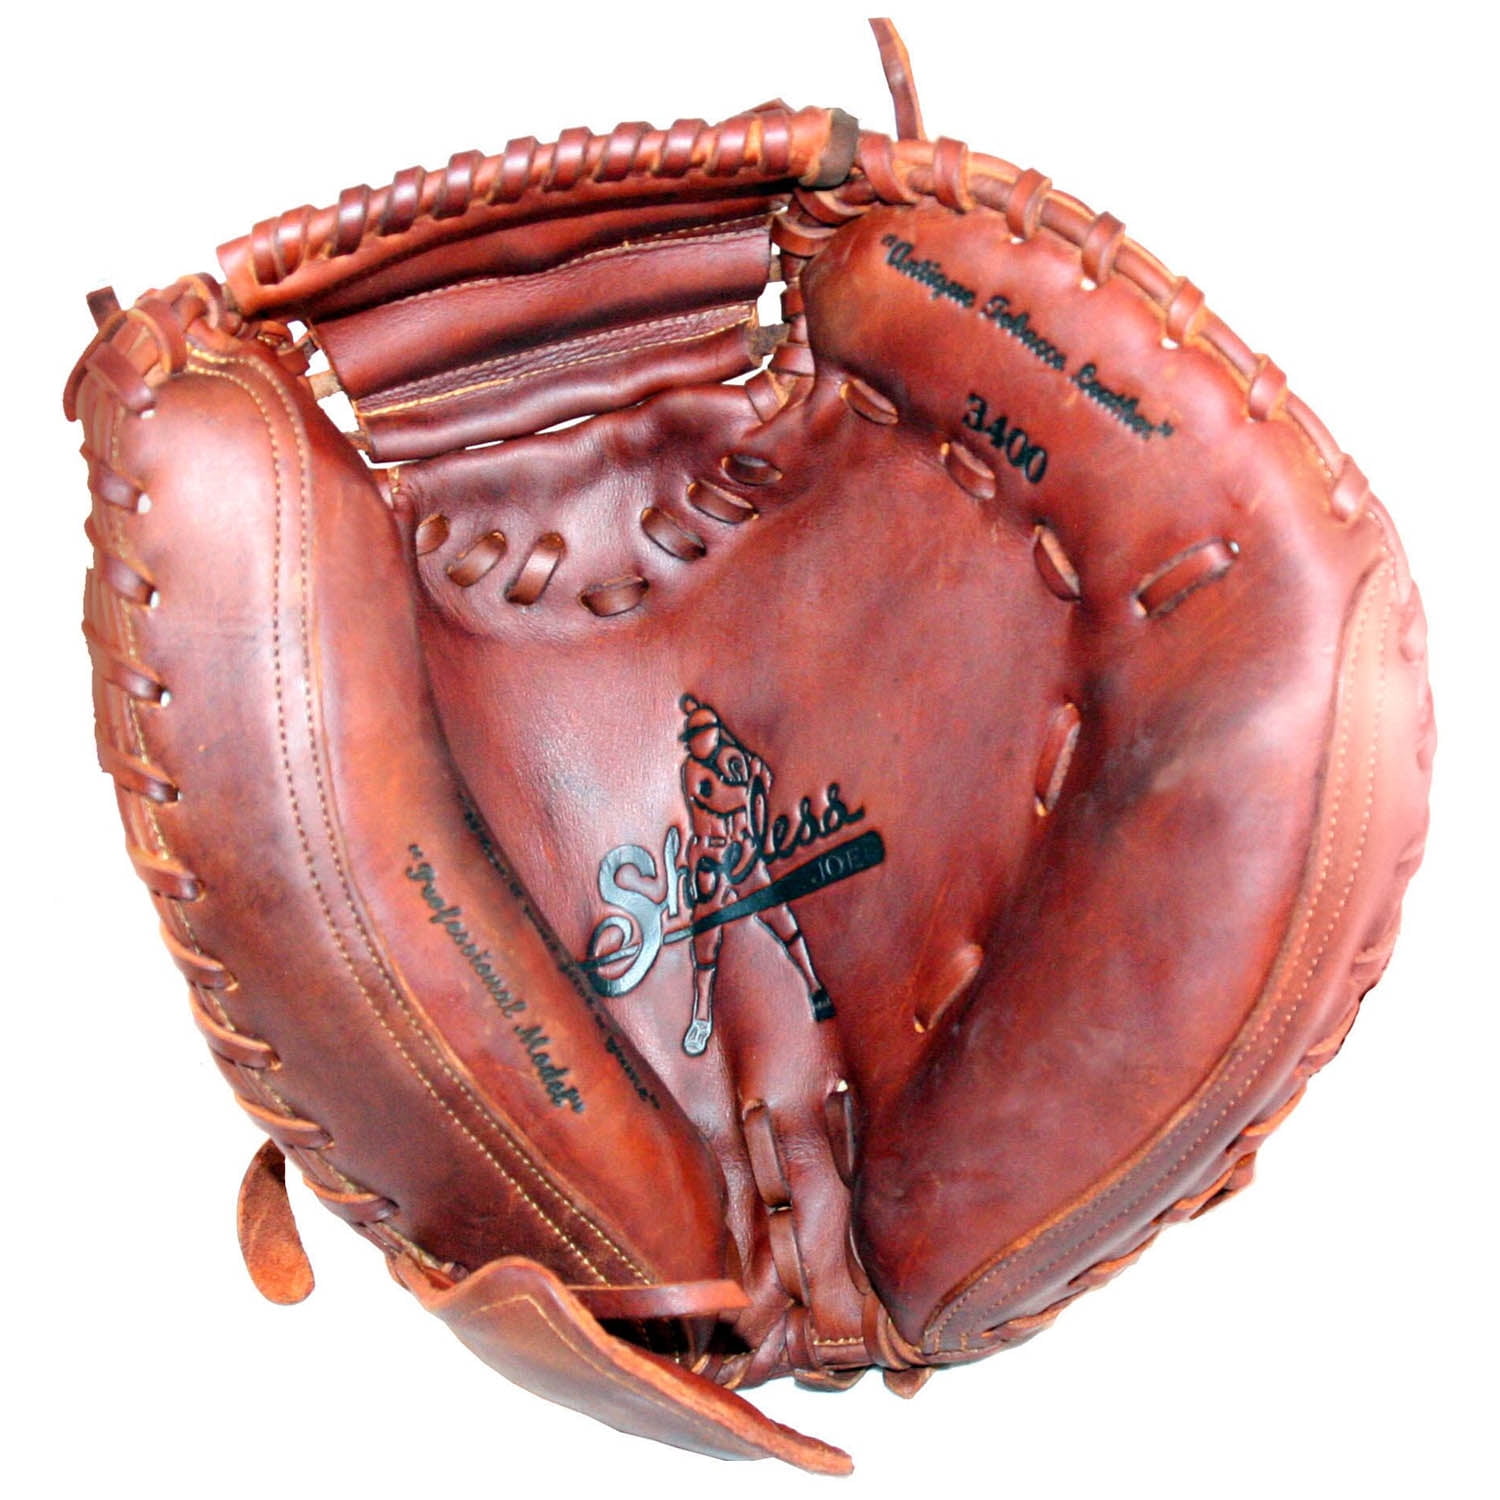 Details about   Shoeless Joe Professional Series Baseball Glove 34" Catcher's Mitt RHT 